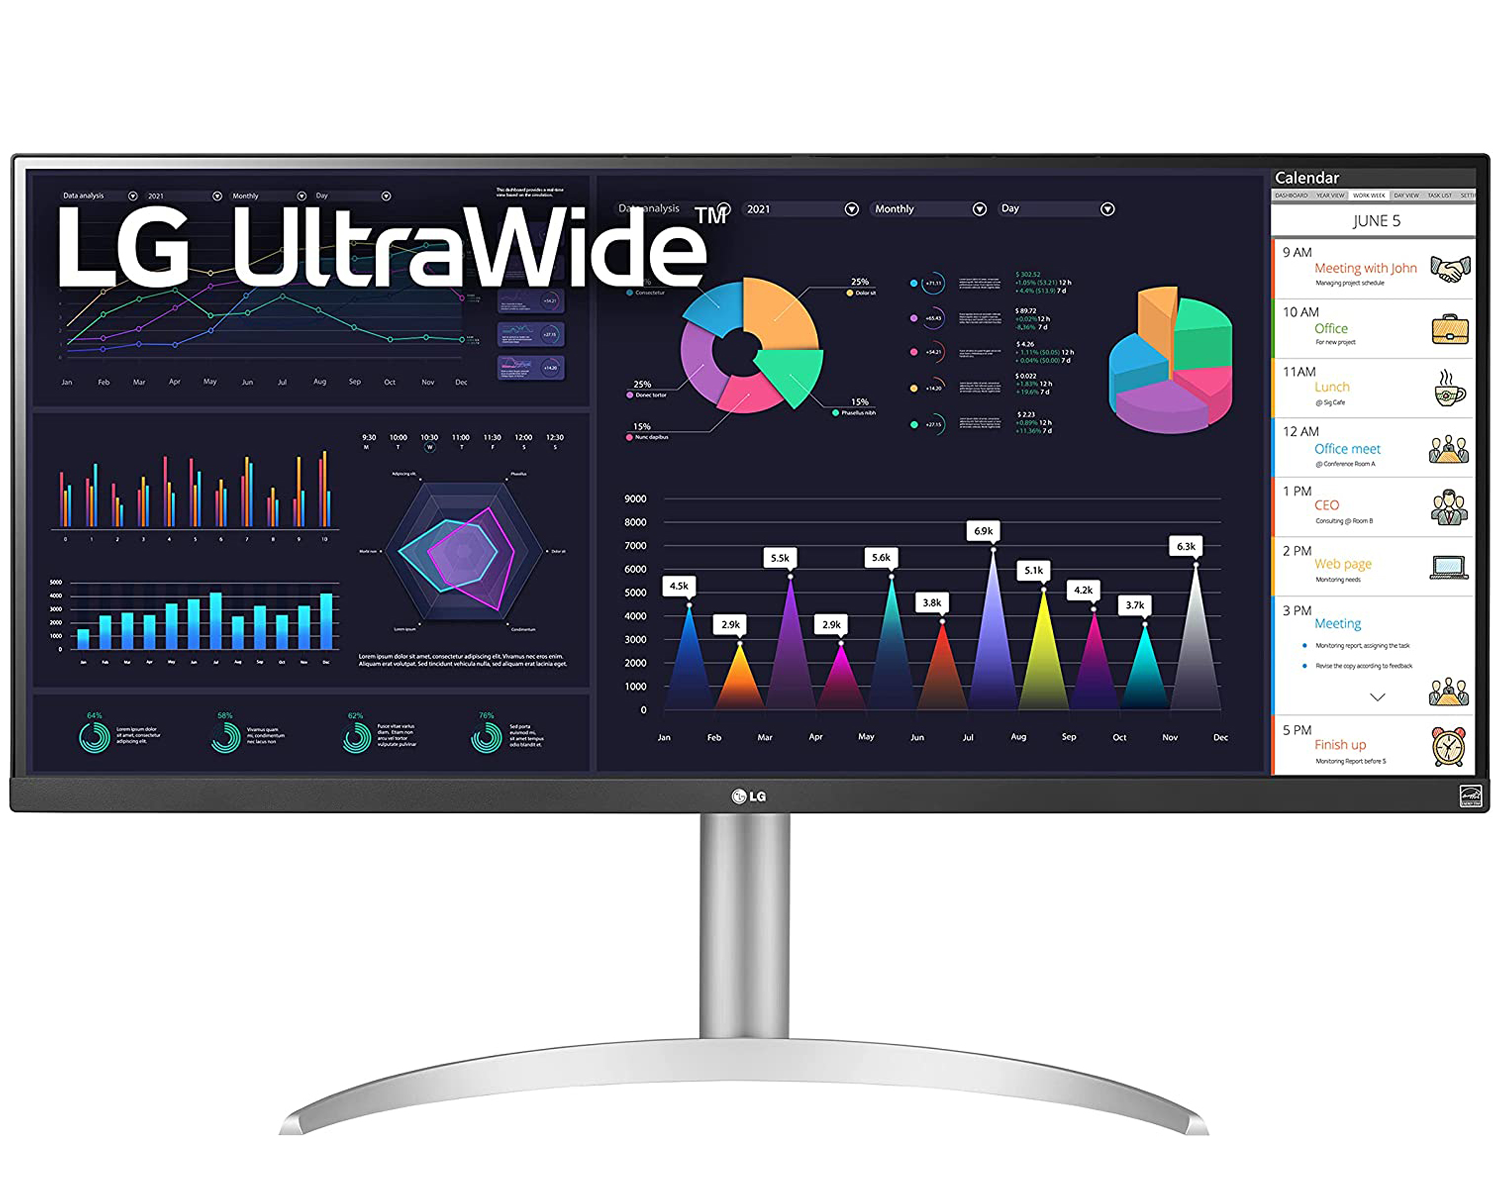 LG UltraWide Monitors